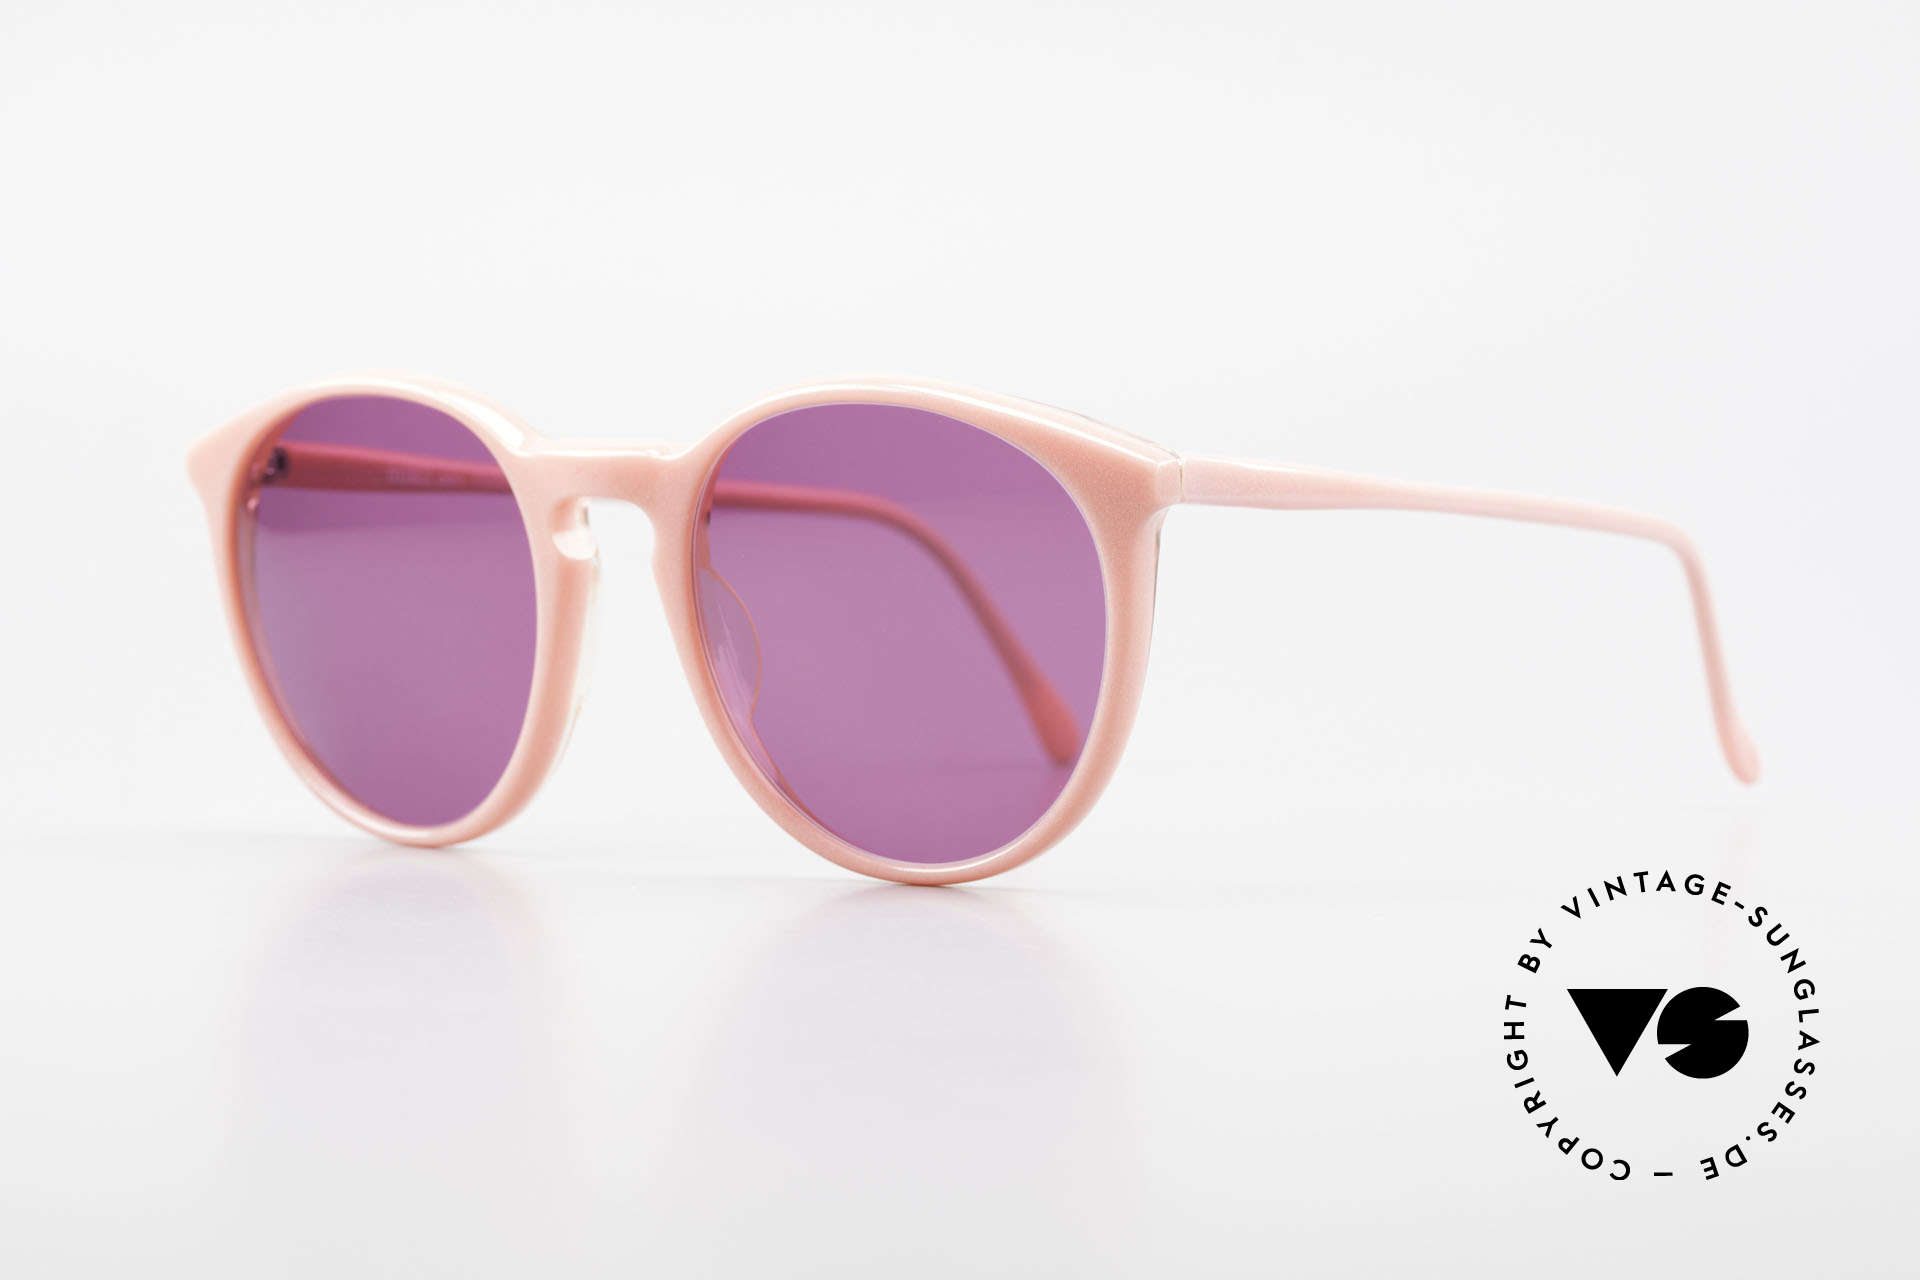 Alain Mikli 901 / 081 Panto Sonnenbrille Lila Pink, tolle Farbkombination für Ladies in pink & violett, Passend für Damen